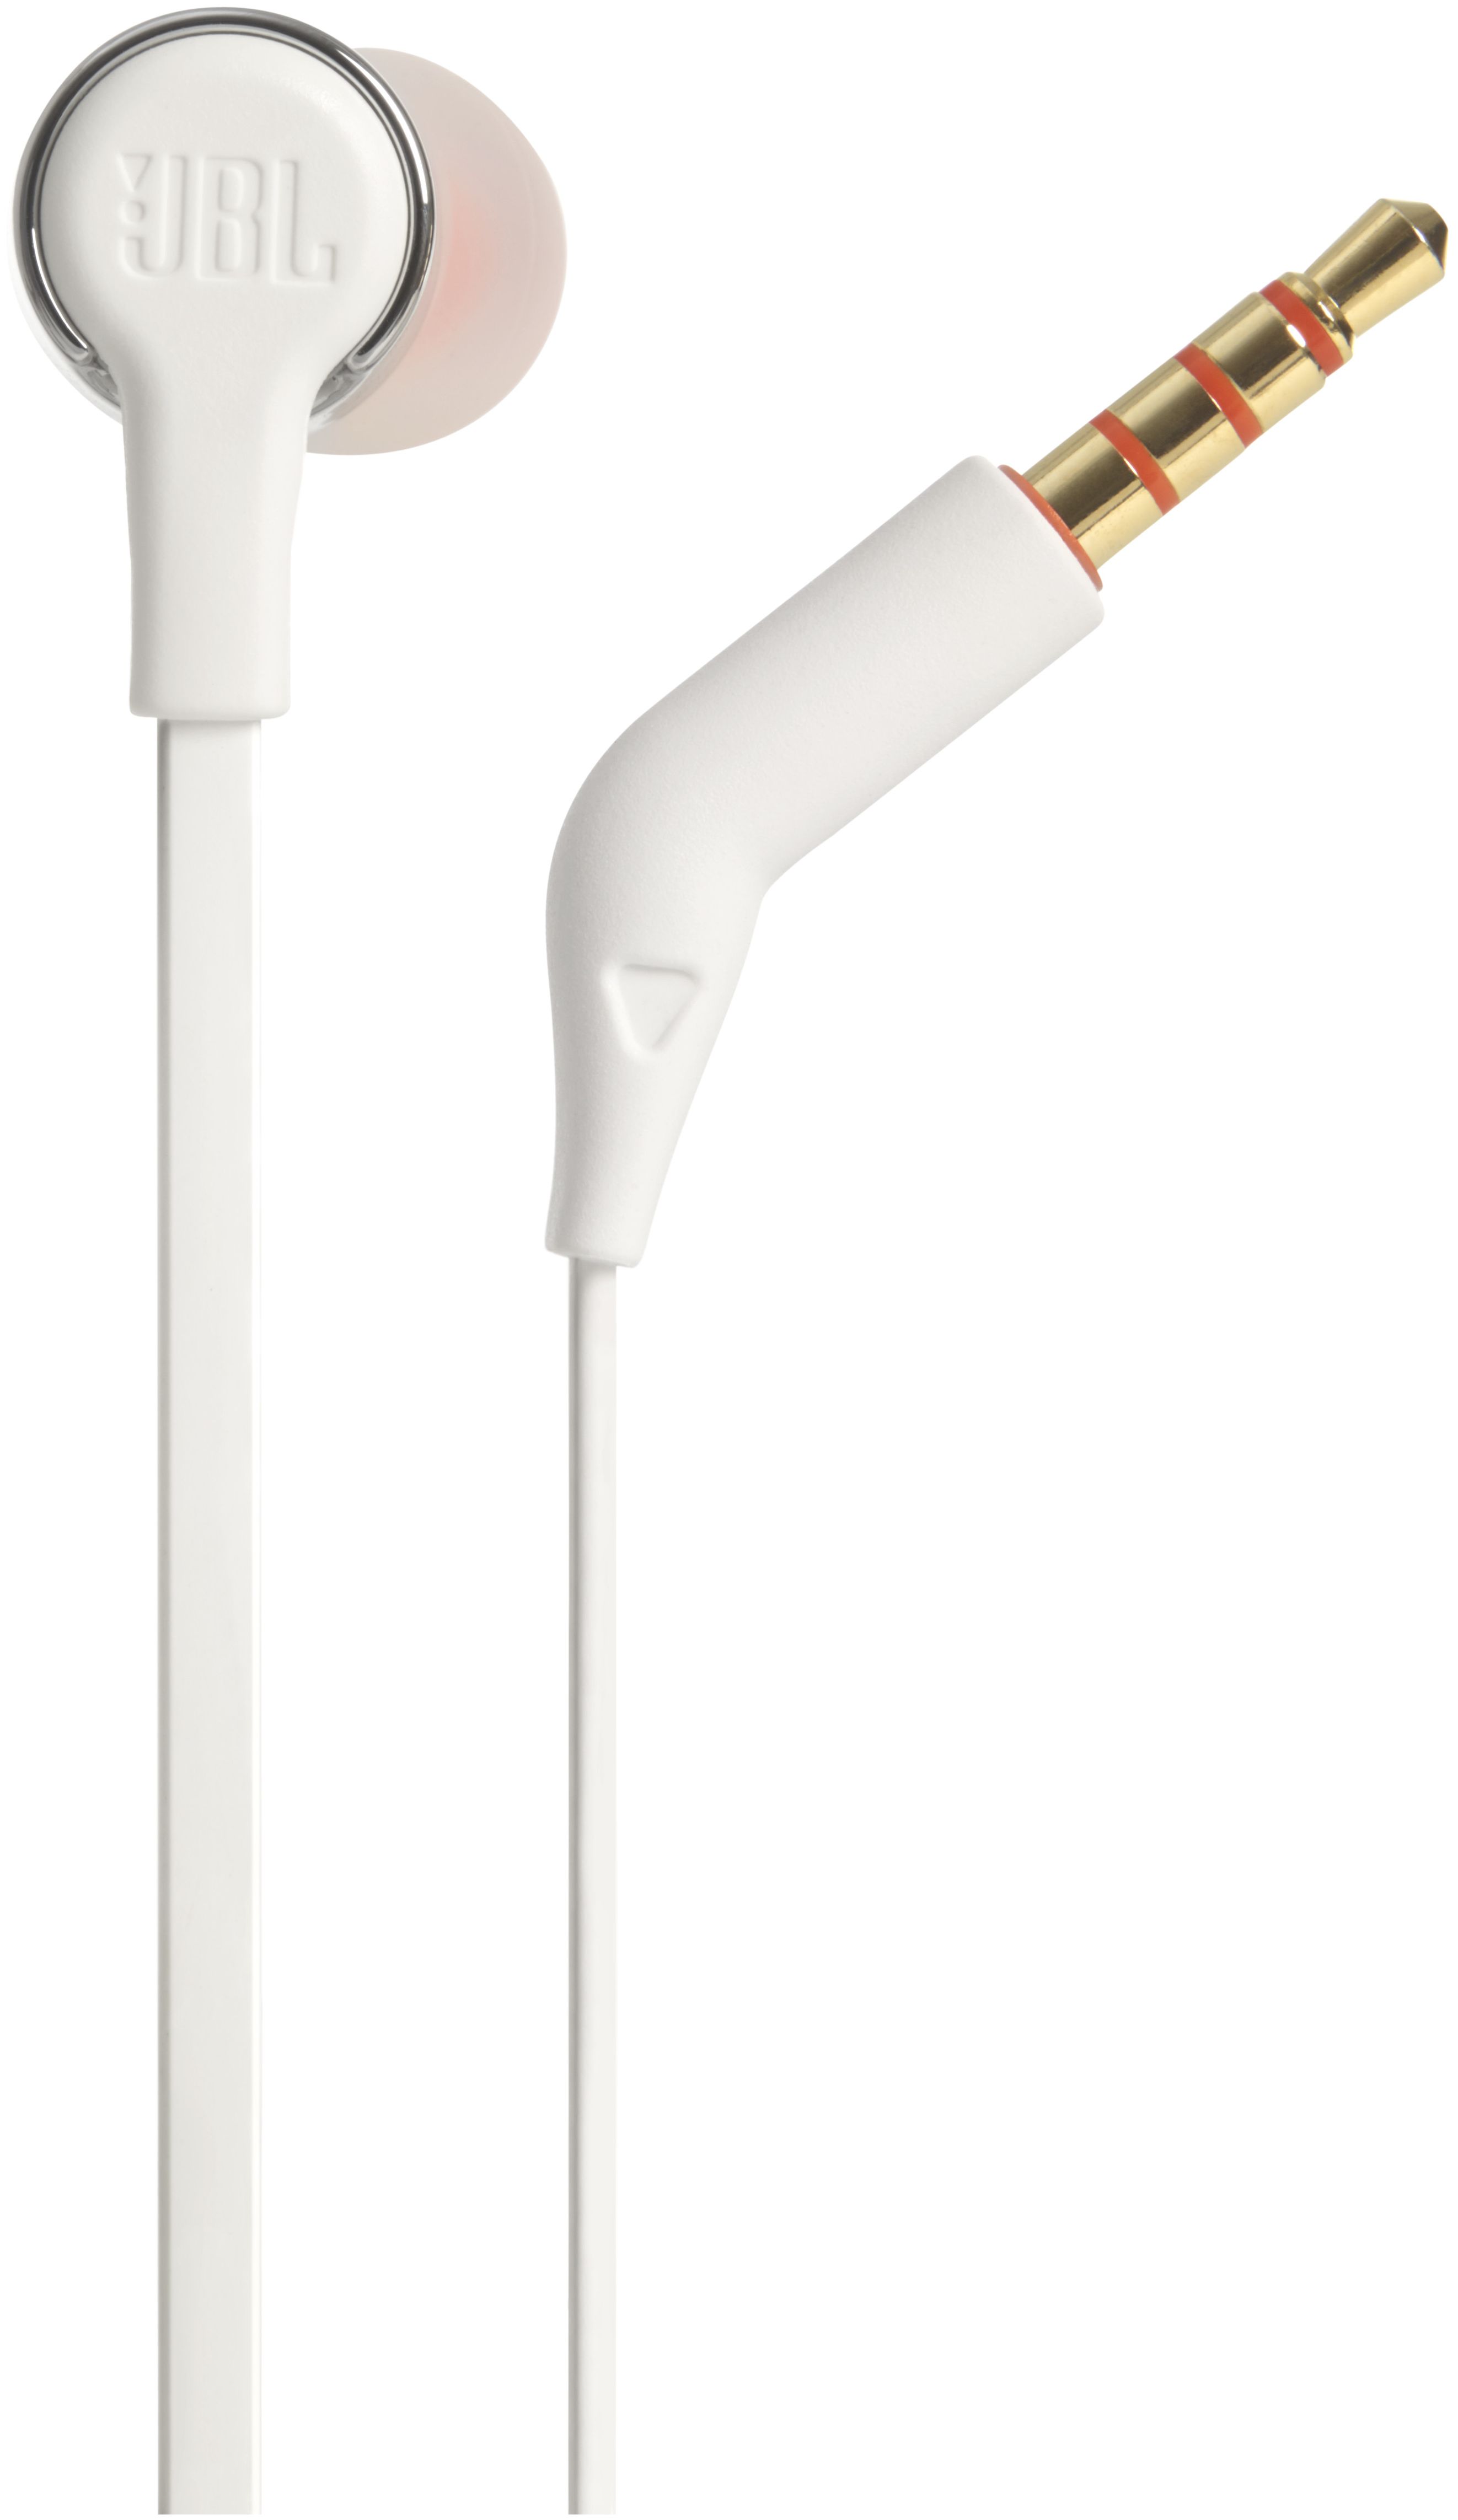 Kopfhörer Technomarkt (Grau) Kabelgebunden JBL von expert 210 Tune In-Ear